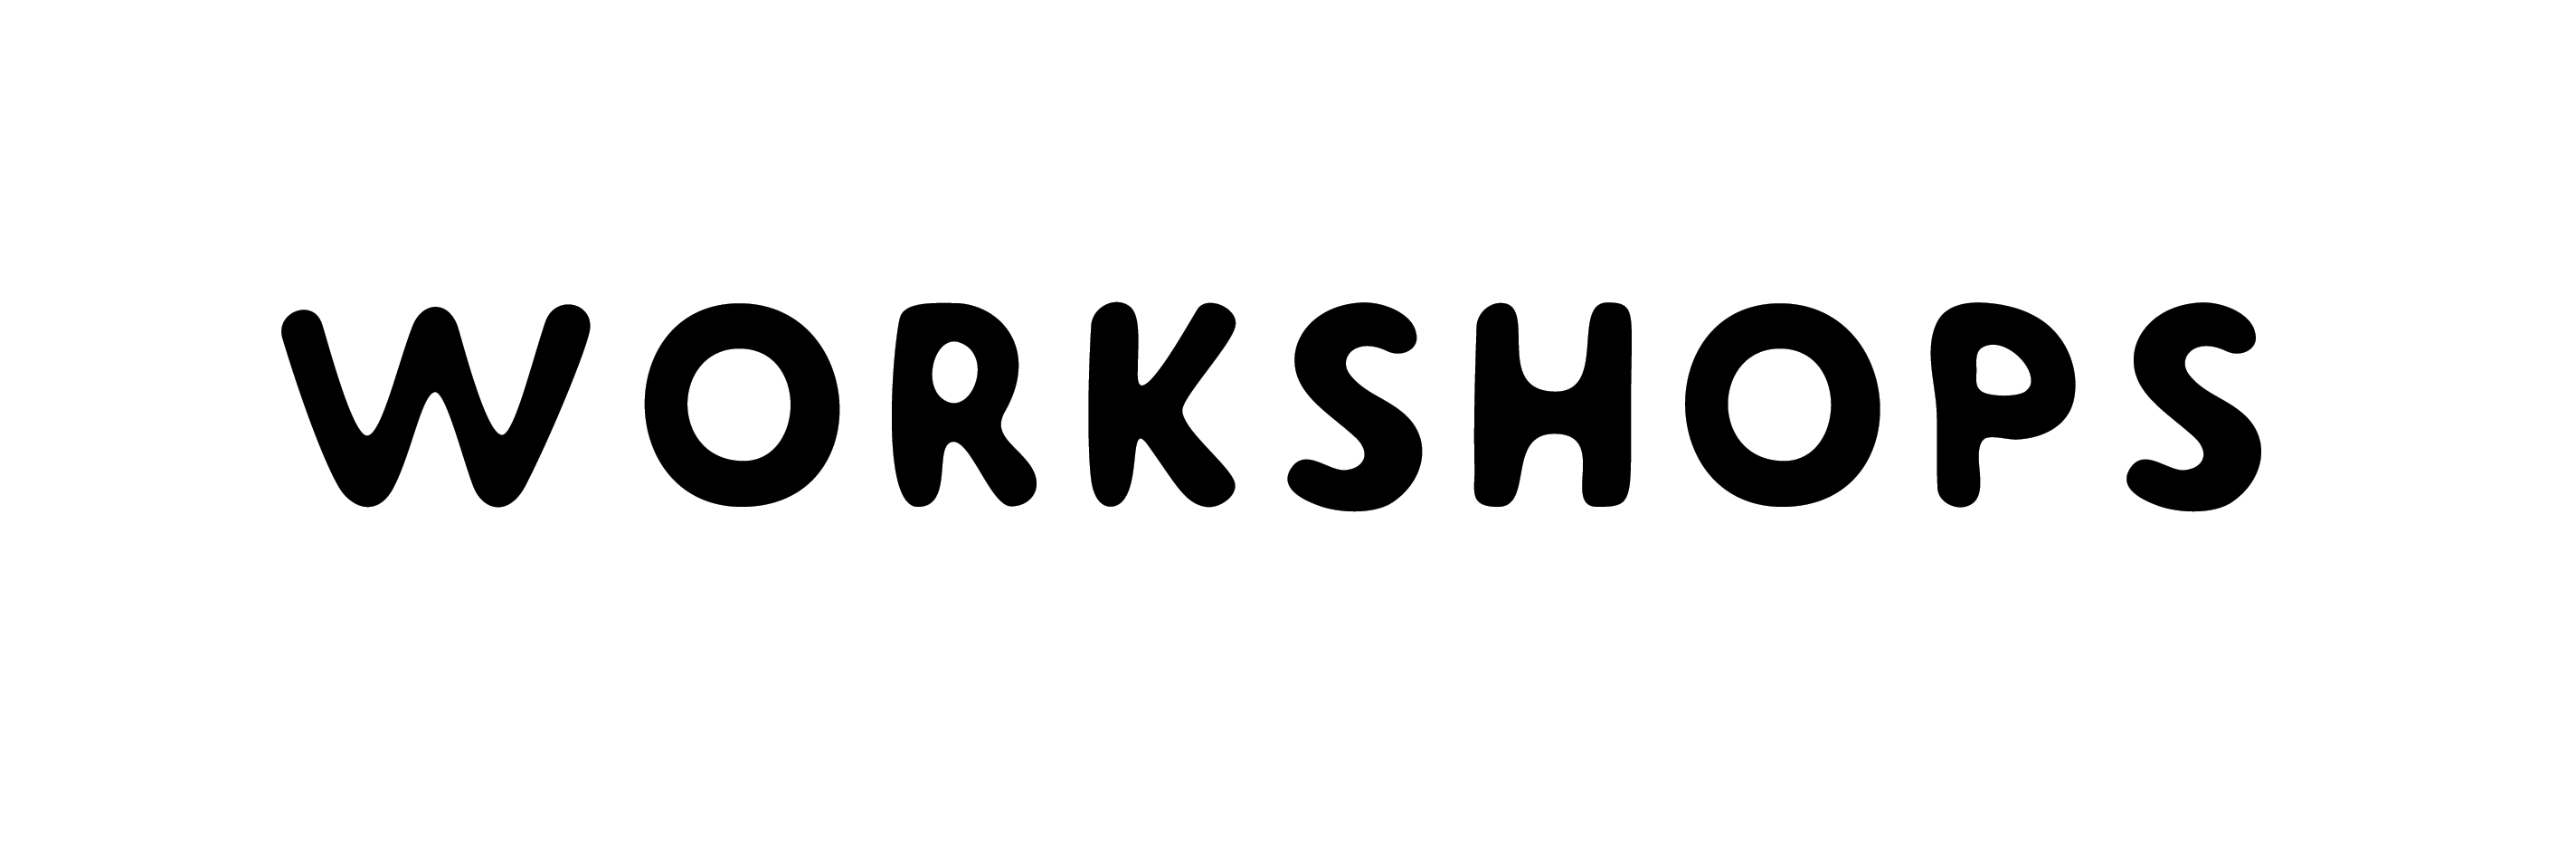 custom creative workshops